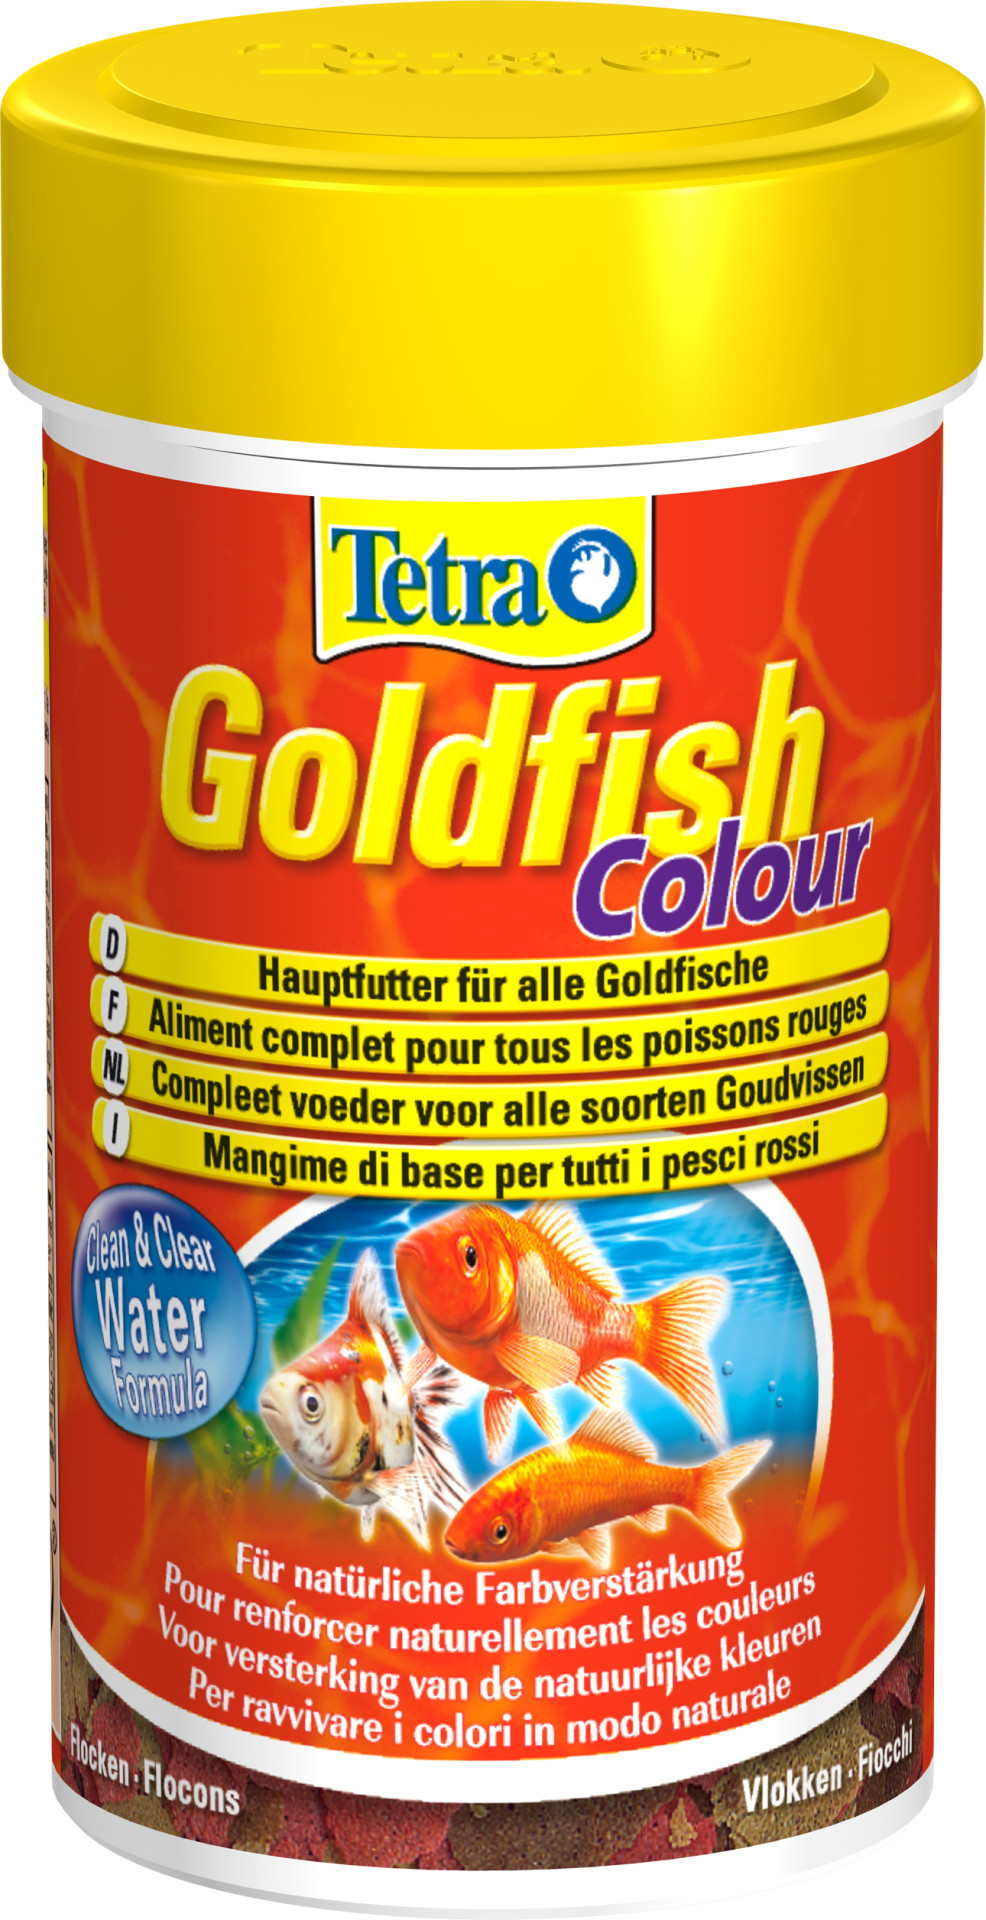 Tetra Goldfish Colour vlokken 100 ml